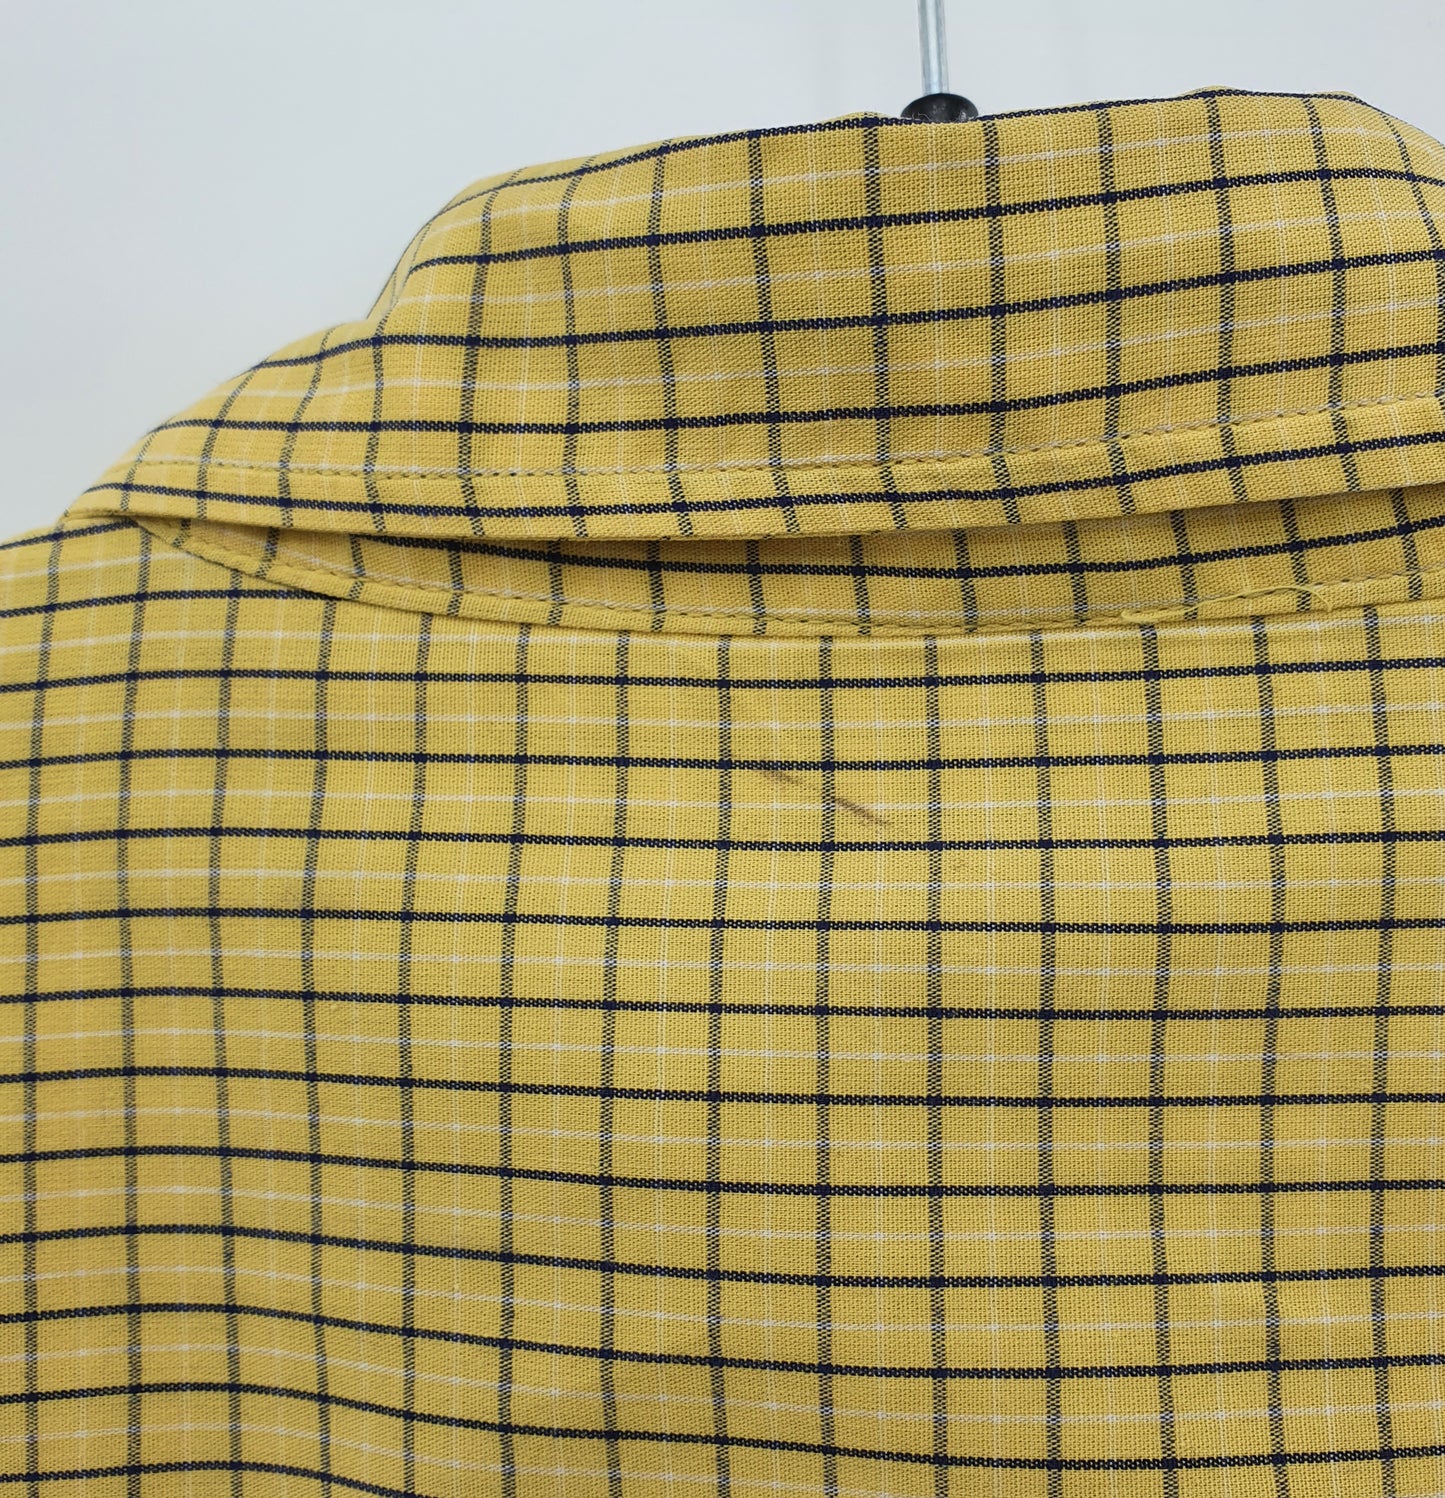 Reflex Classic, miesten keltainen paitapusero, 90-luku, koko (L)XL